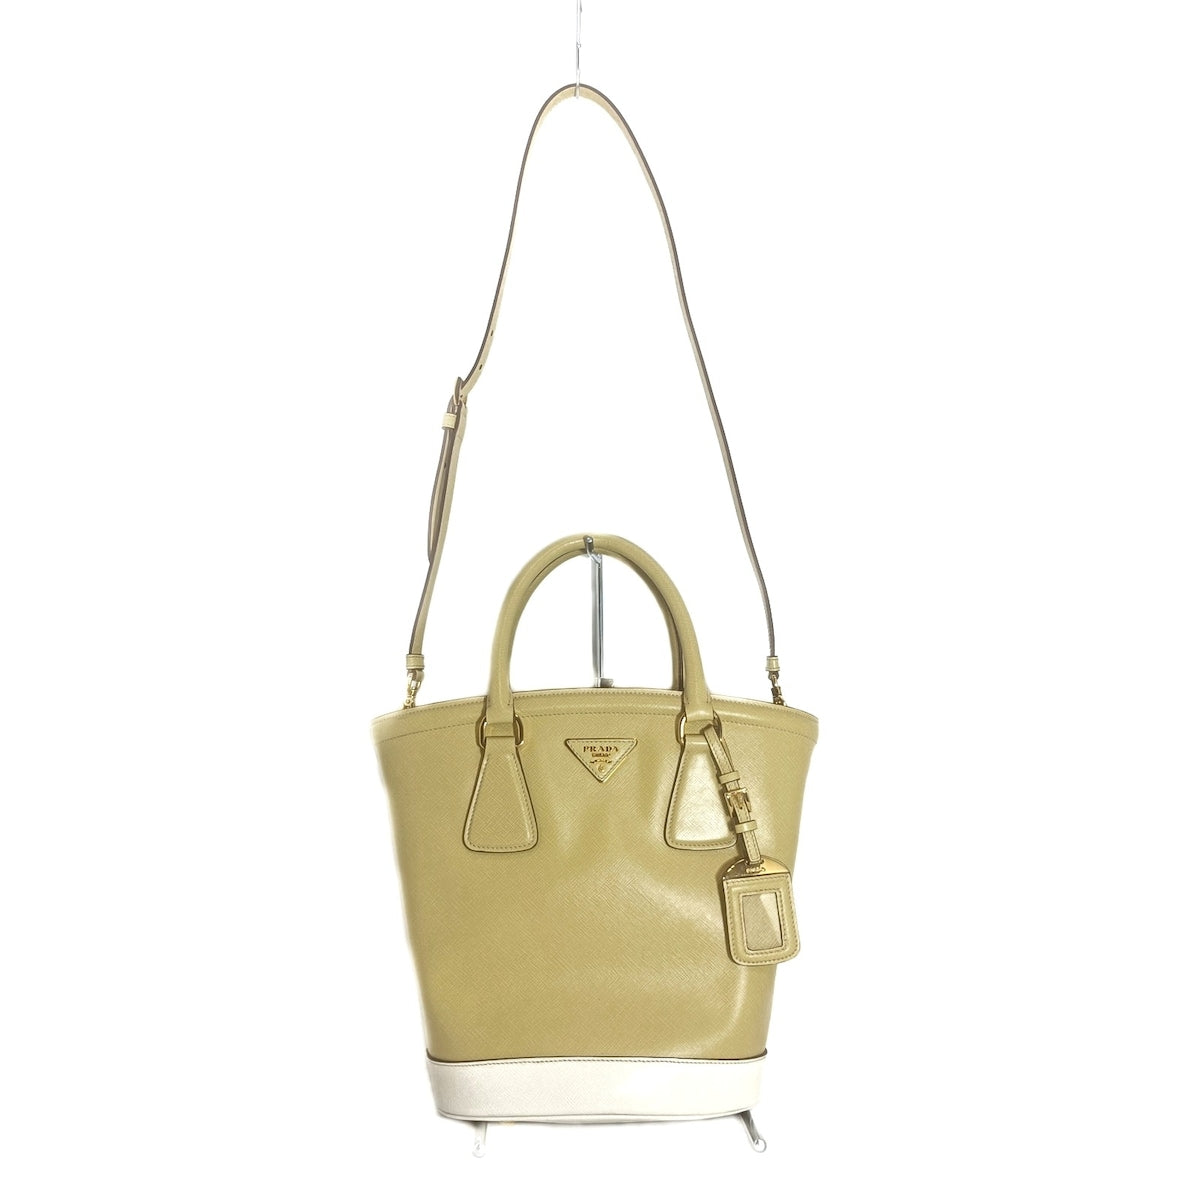 Saffiano Lux Handbag Prada, buy pre-owned at 600 EUR